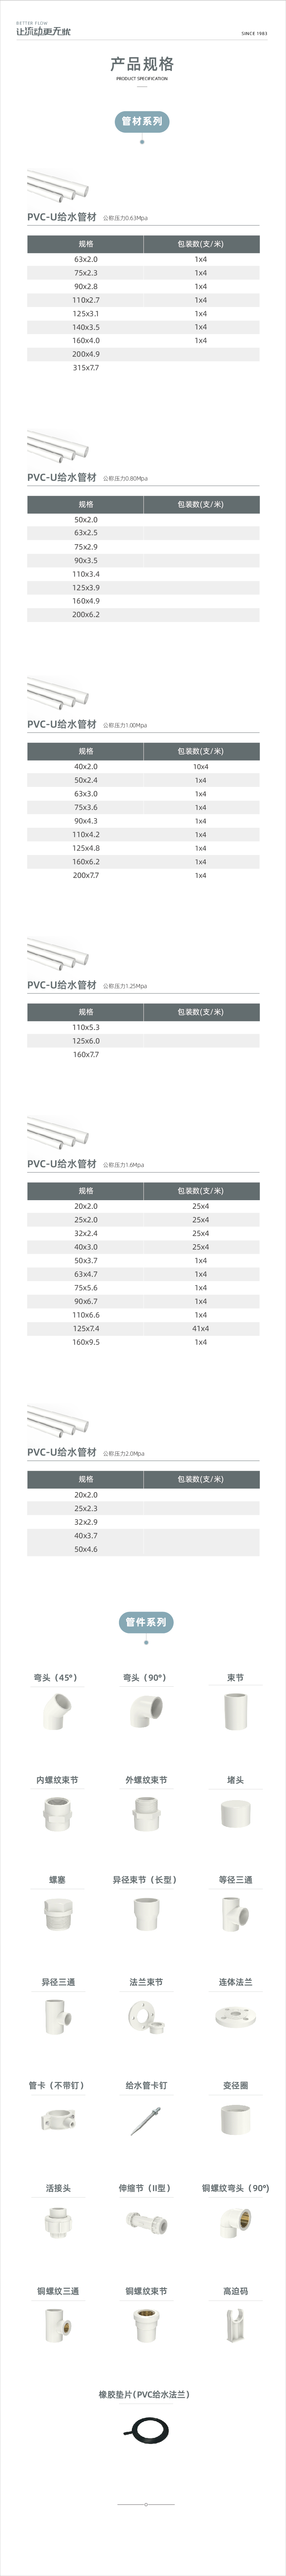 PVC-U给水系列-02.jpg